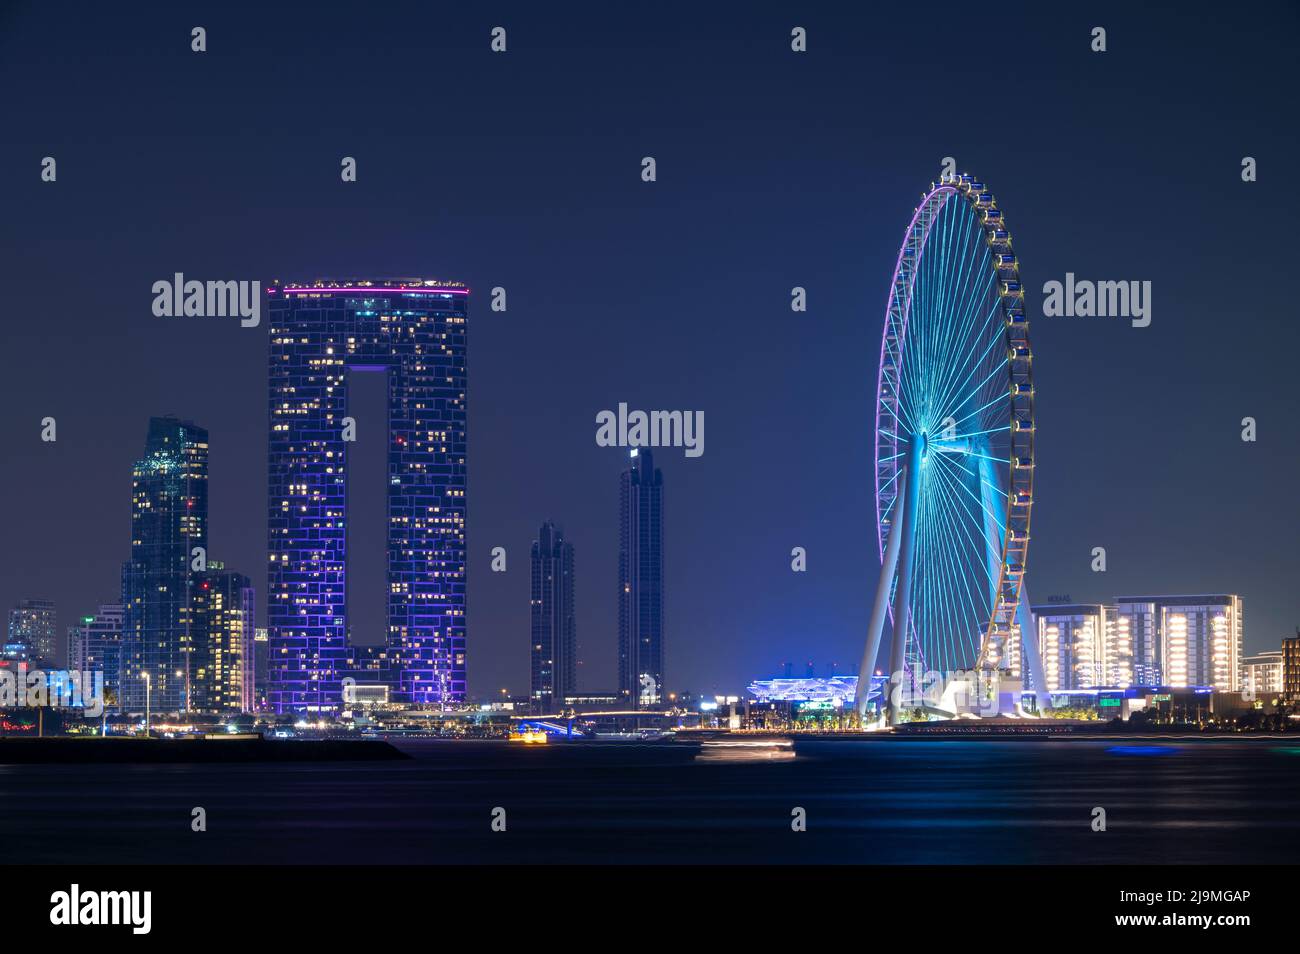 Farbenfroher Blick auf das beleuchtete Address Beach Resort und das Dubai Eye Ferris Wheel, das von der Palme Jumeirah West in Dubai, VAE, erfasst wurde. Stockfoto